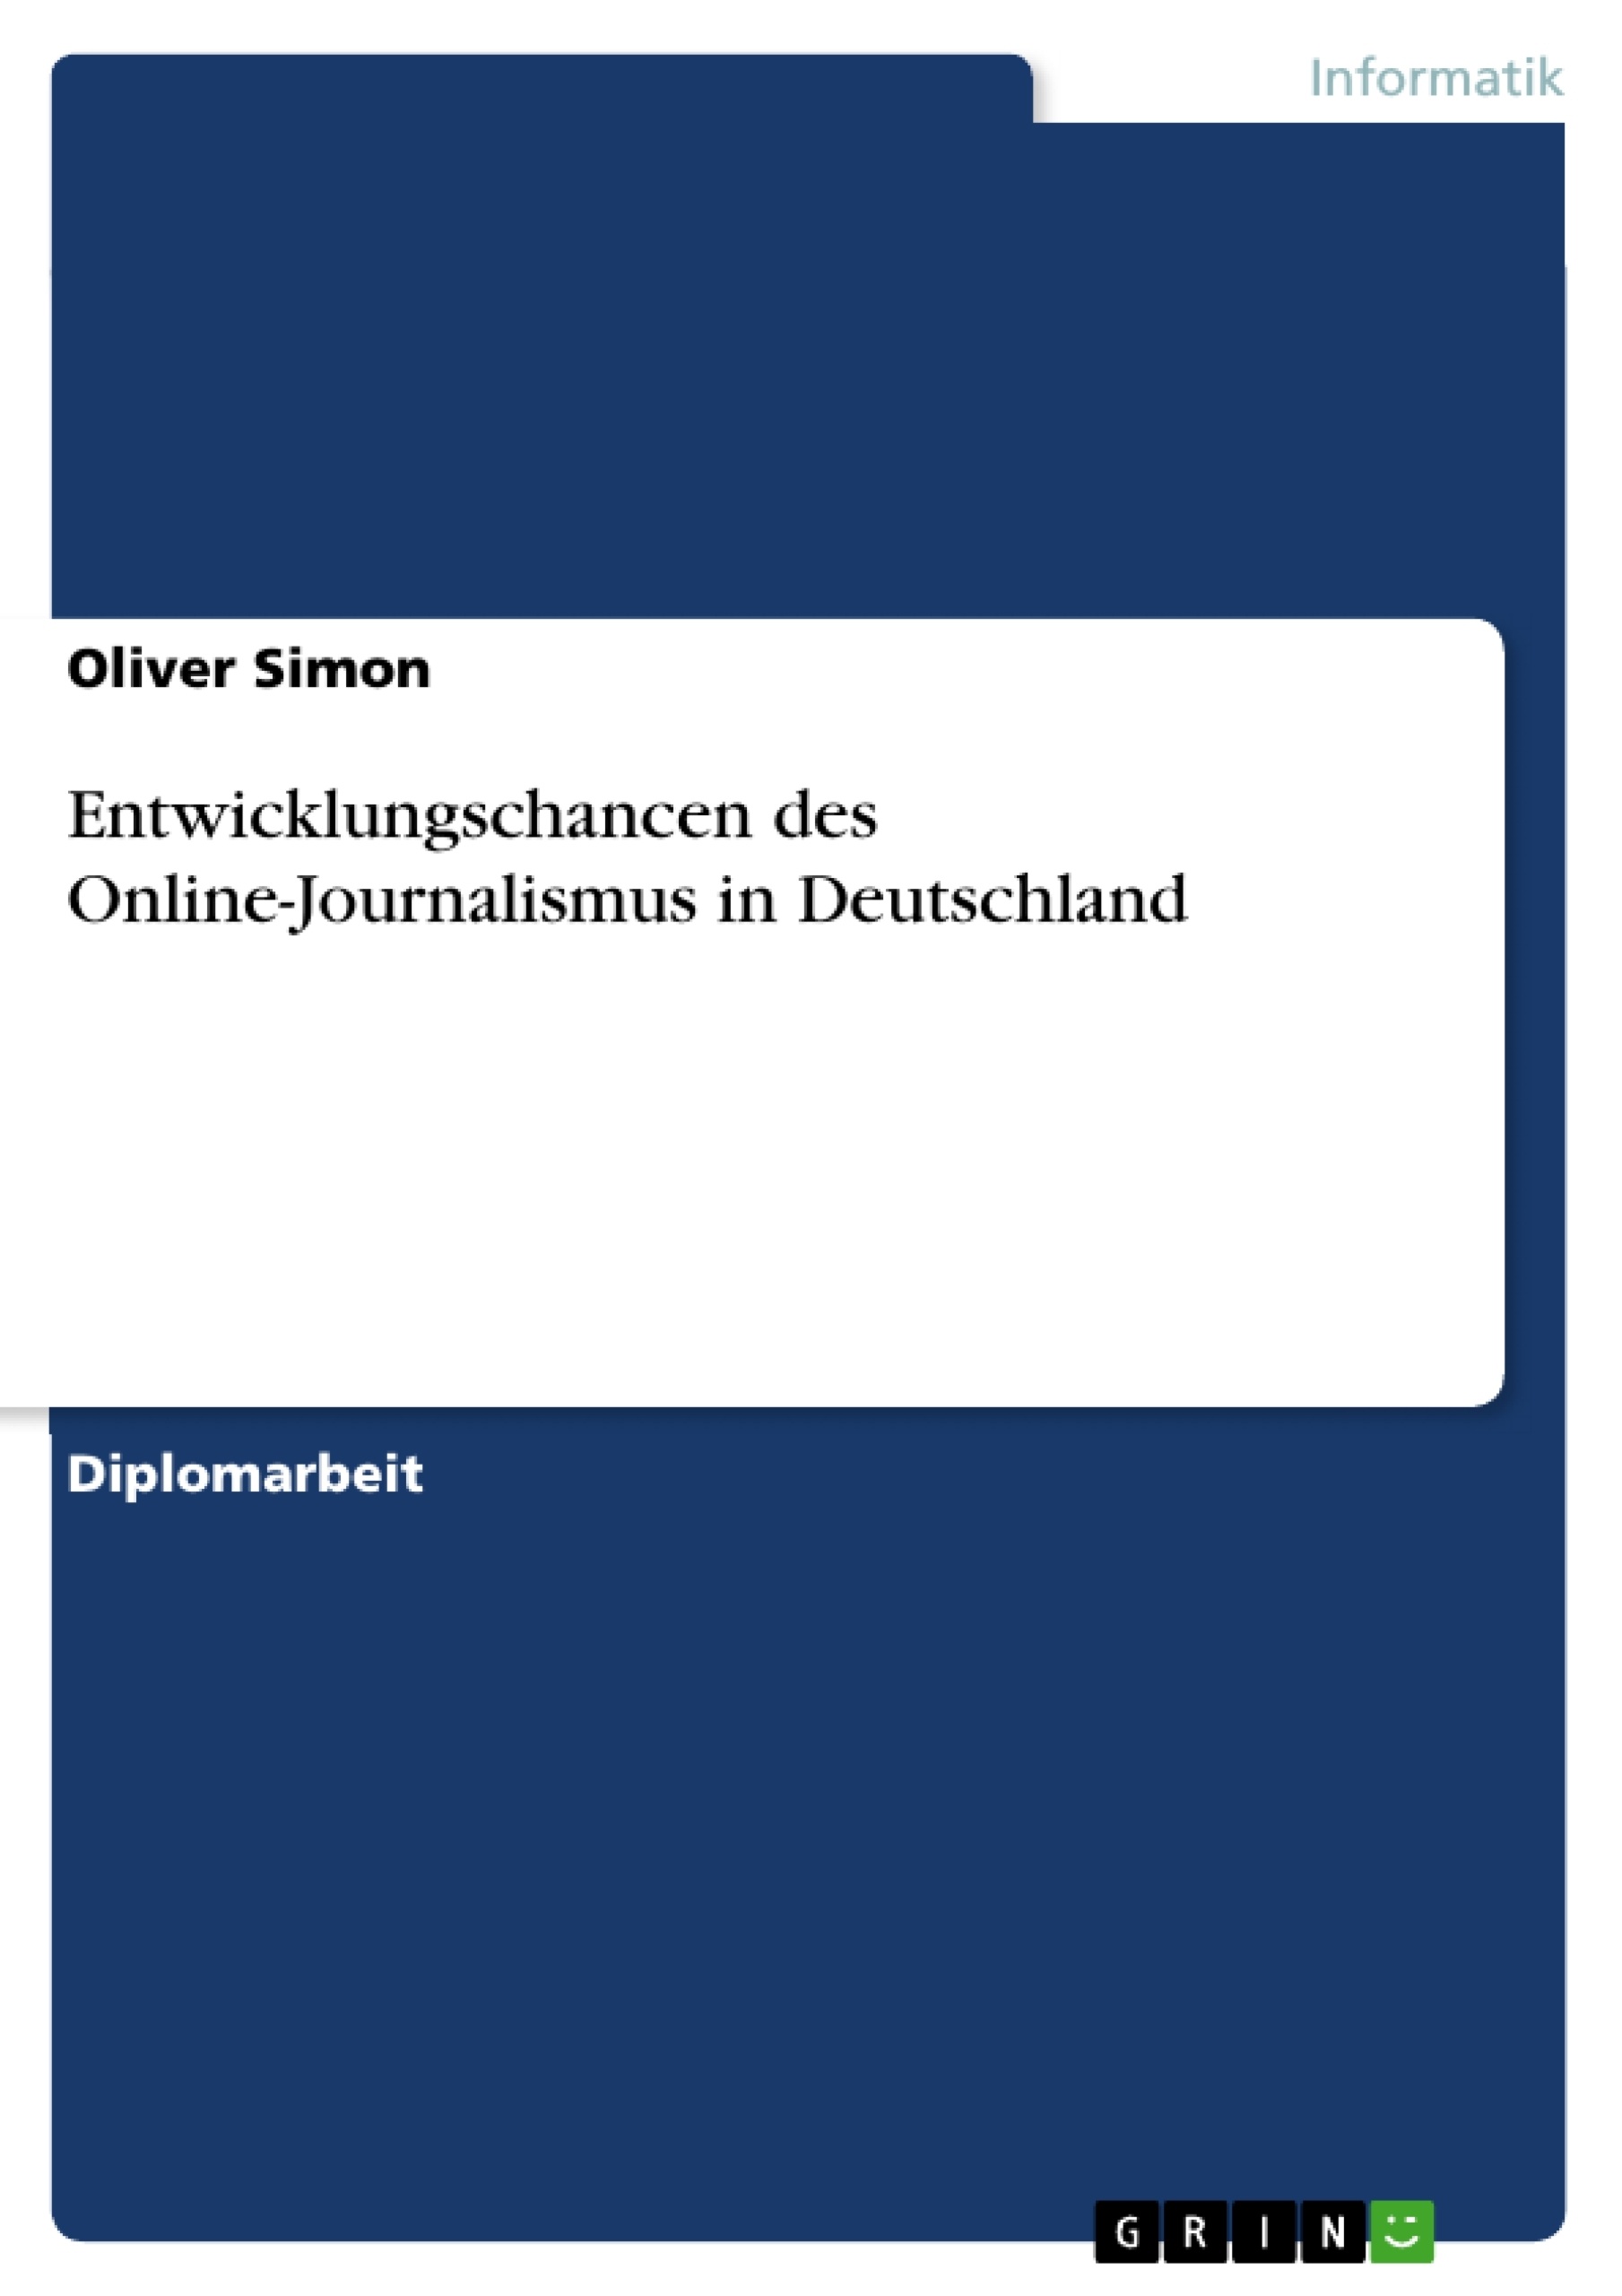 Title: Entwicklungschancen des Online-Journalismus in Deutschland